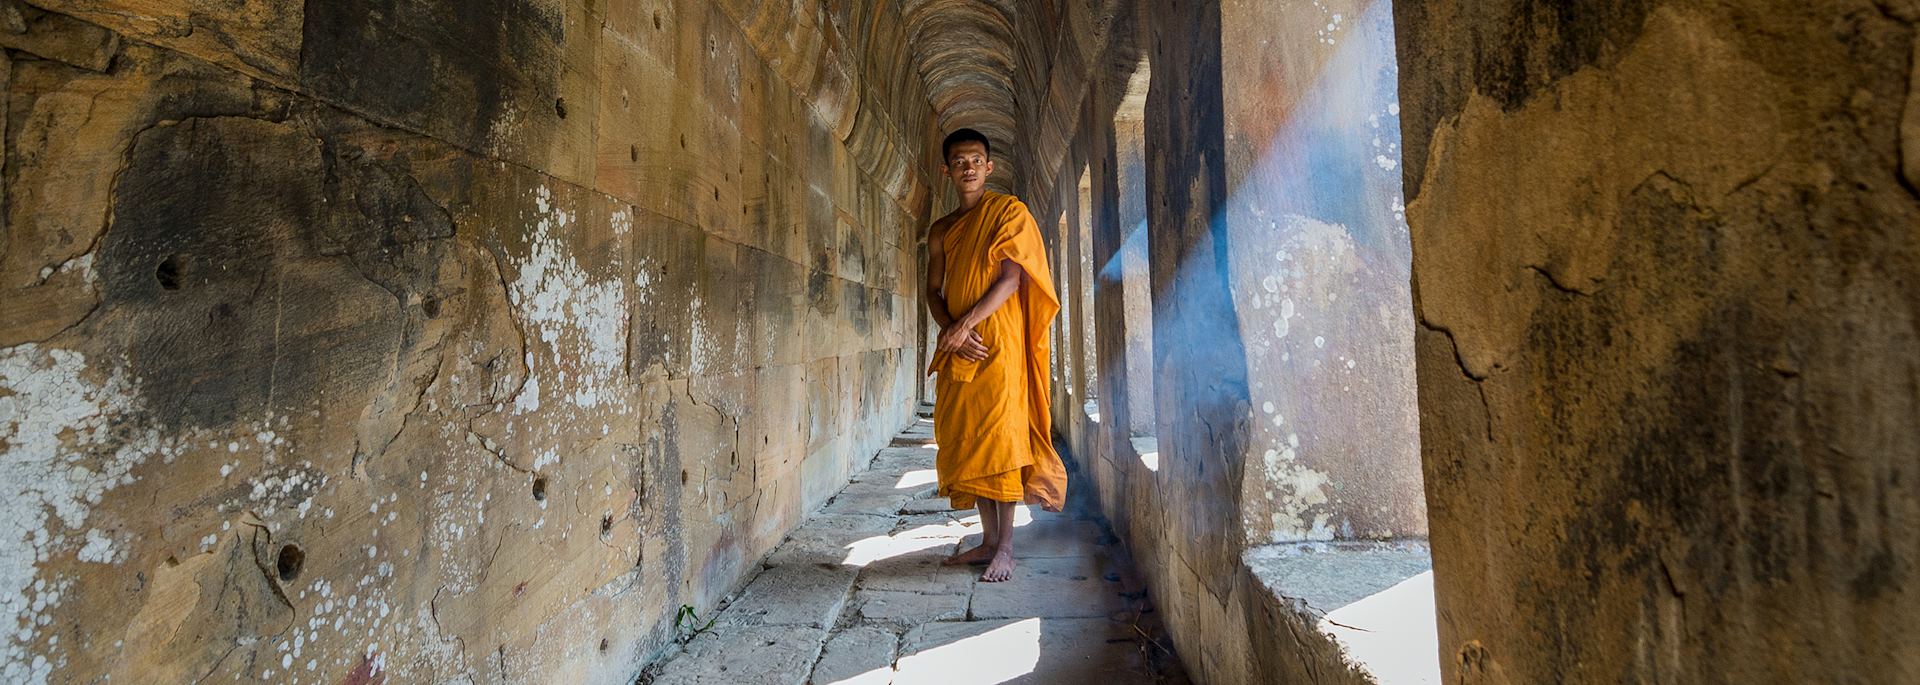 Monk at Preah Vihear